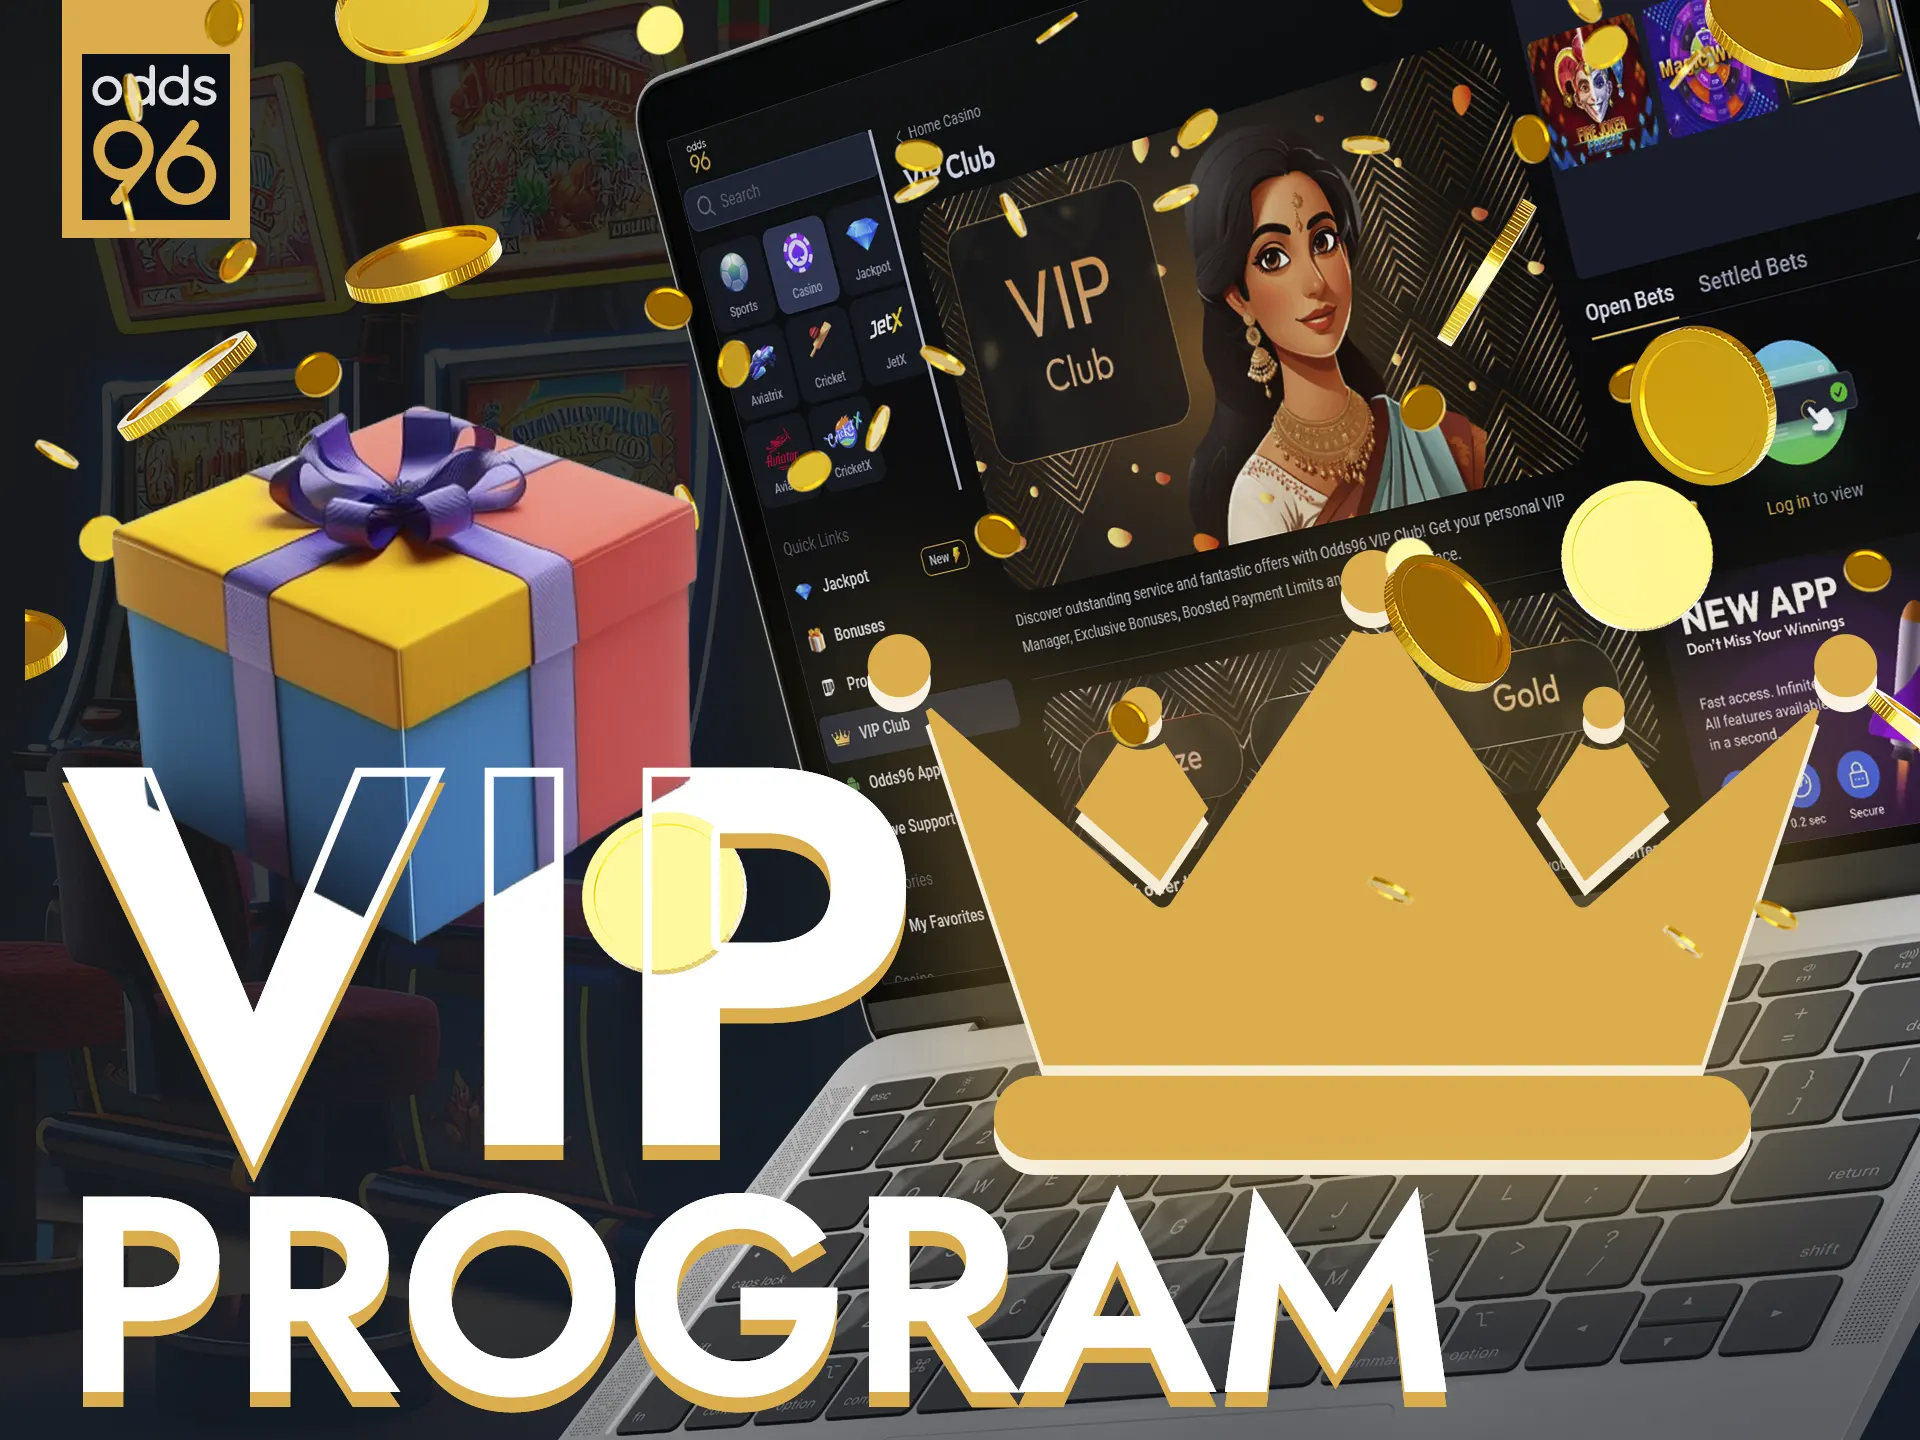 Odds96 rewards loyal members with VIP bonuses.